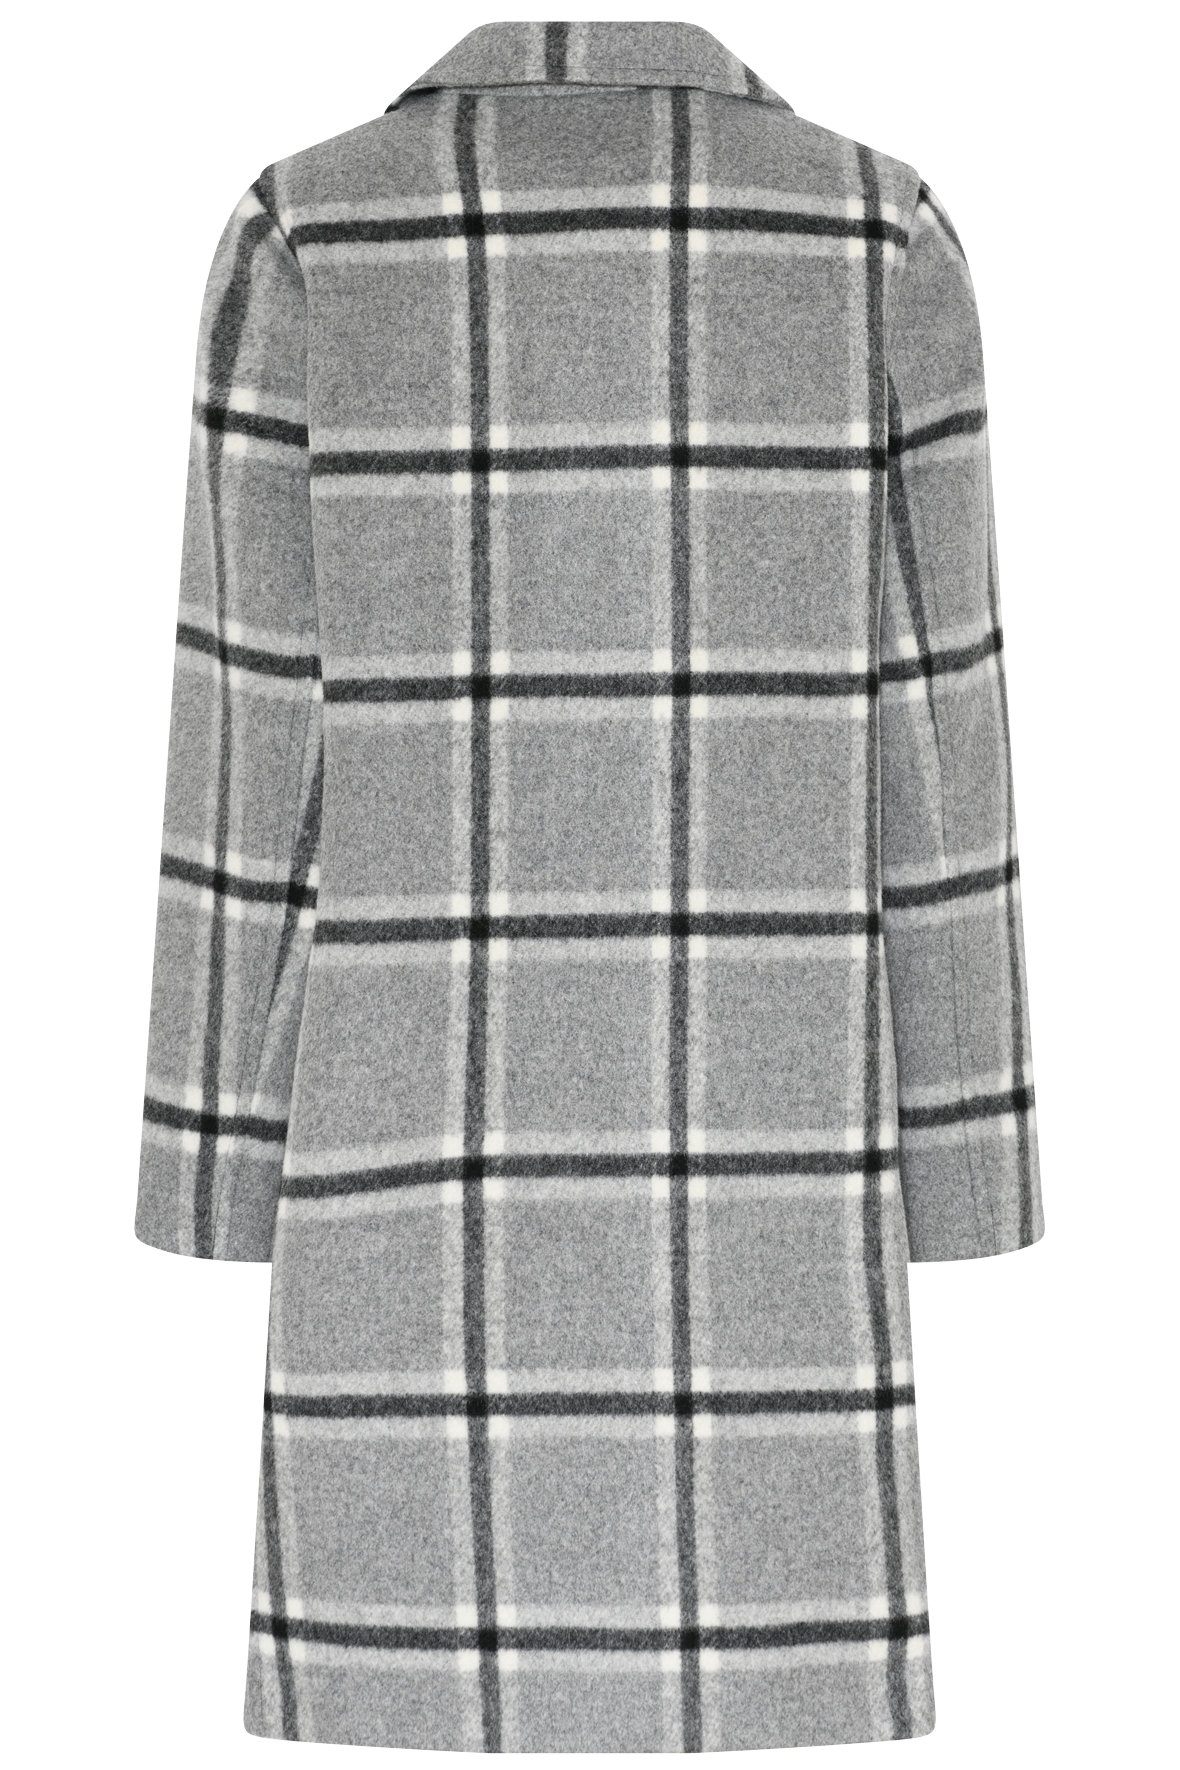 Wool Mix Jacket - ternet i grå til KVINDER - Hos Lohse